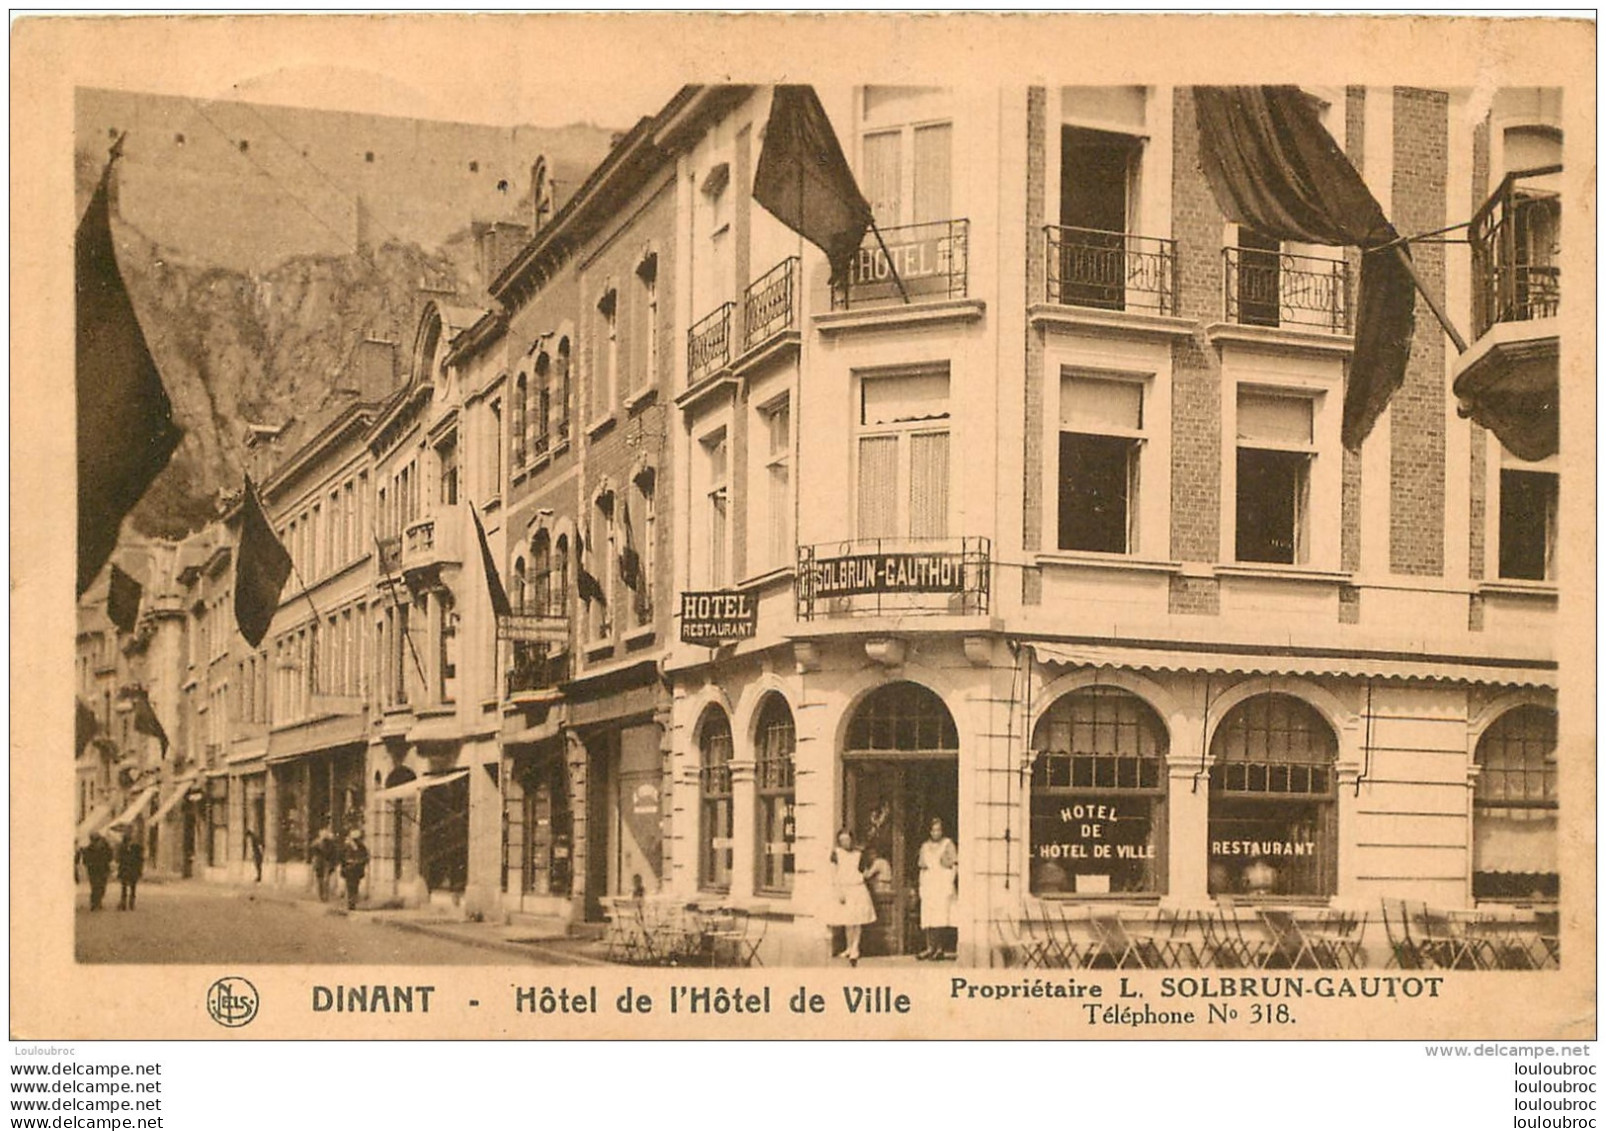 DINANT HOTEL DE L'HOTEL DE VILLE SOLBRUN GAUTOT CACHET DINANT TOURISME - Dinant